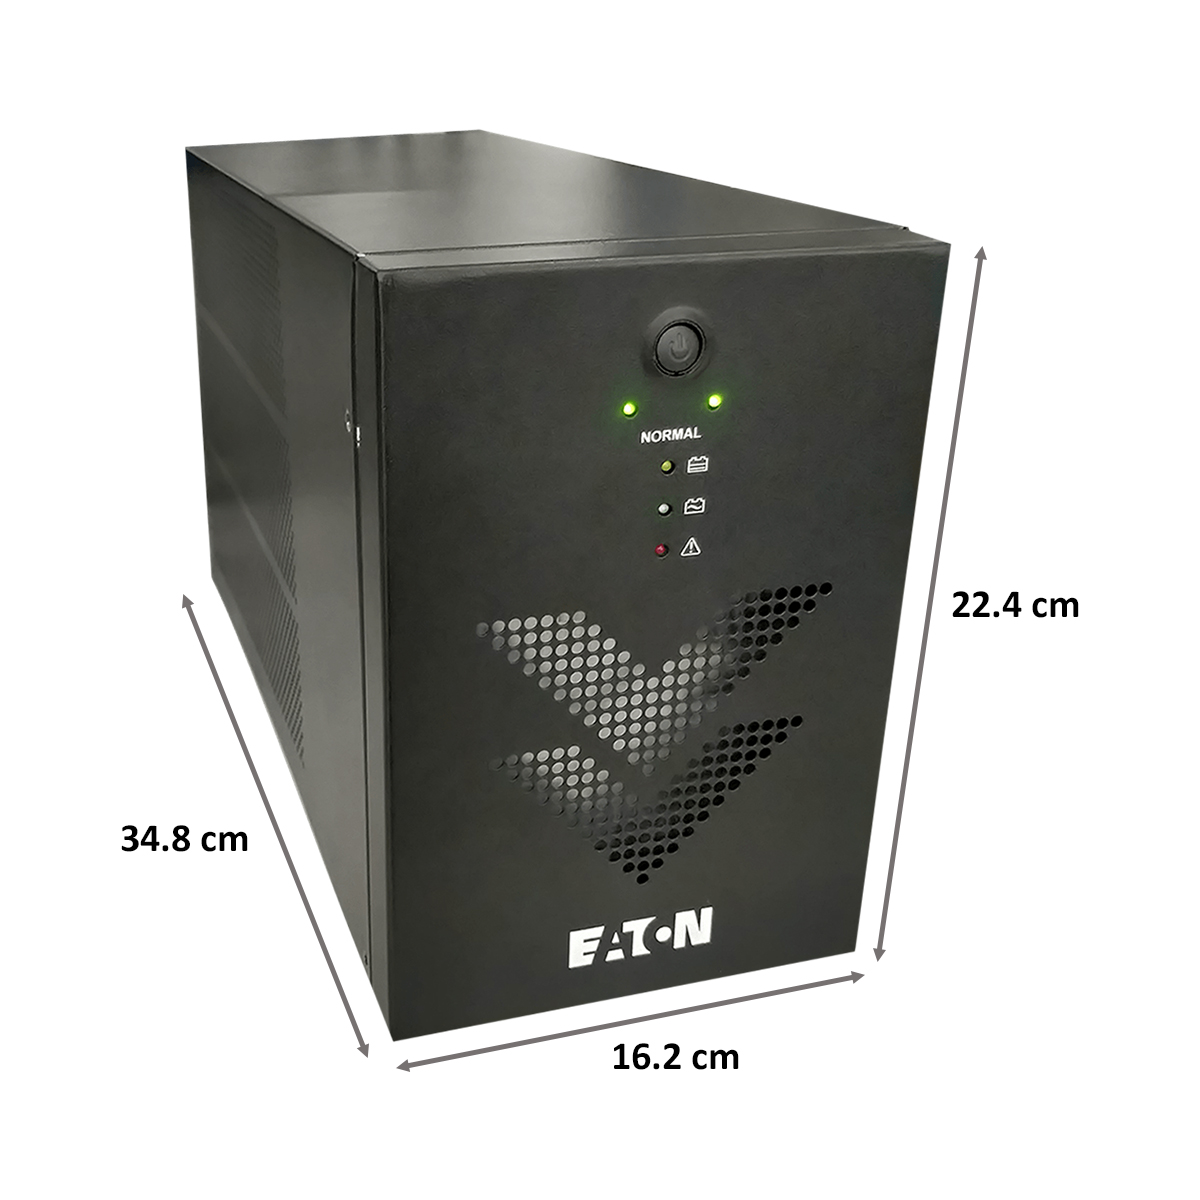 Eaton Aurora 1000va 4 Battery UPS For Home Appliances (140 - 300V, Extended Battery Backup, 801028025, Black)_2